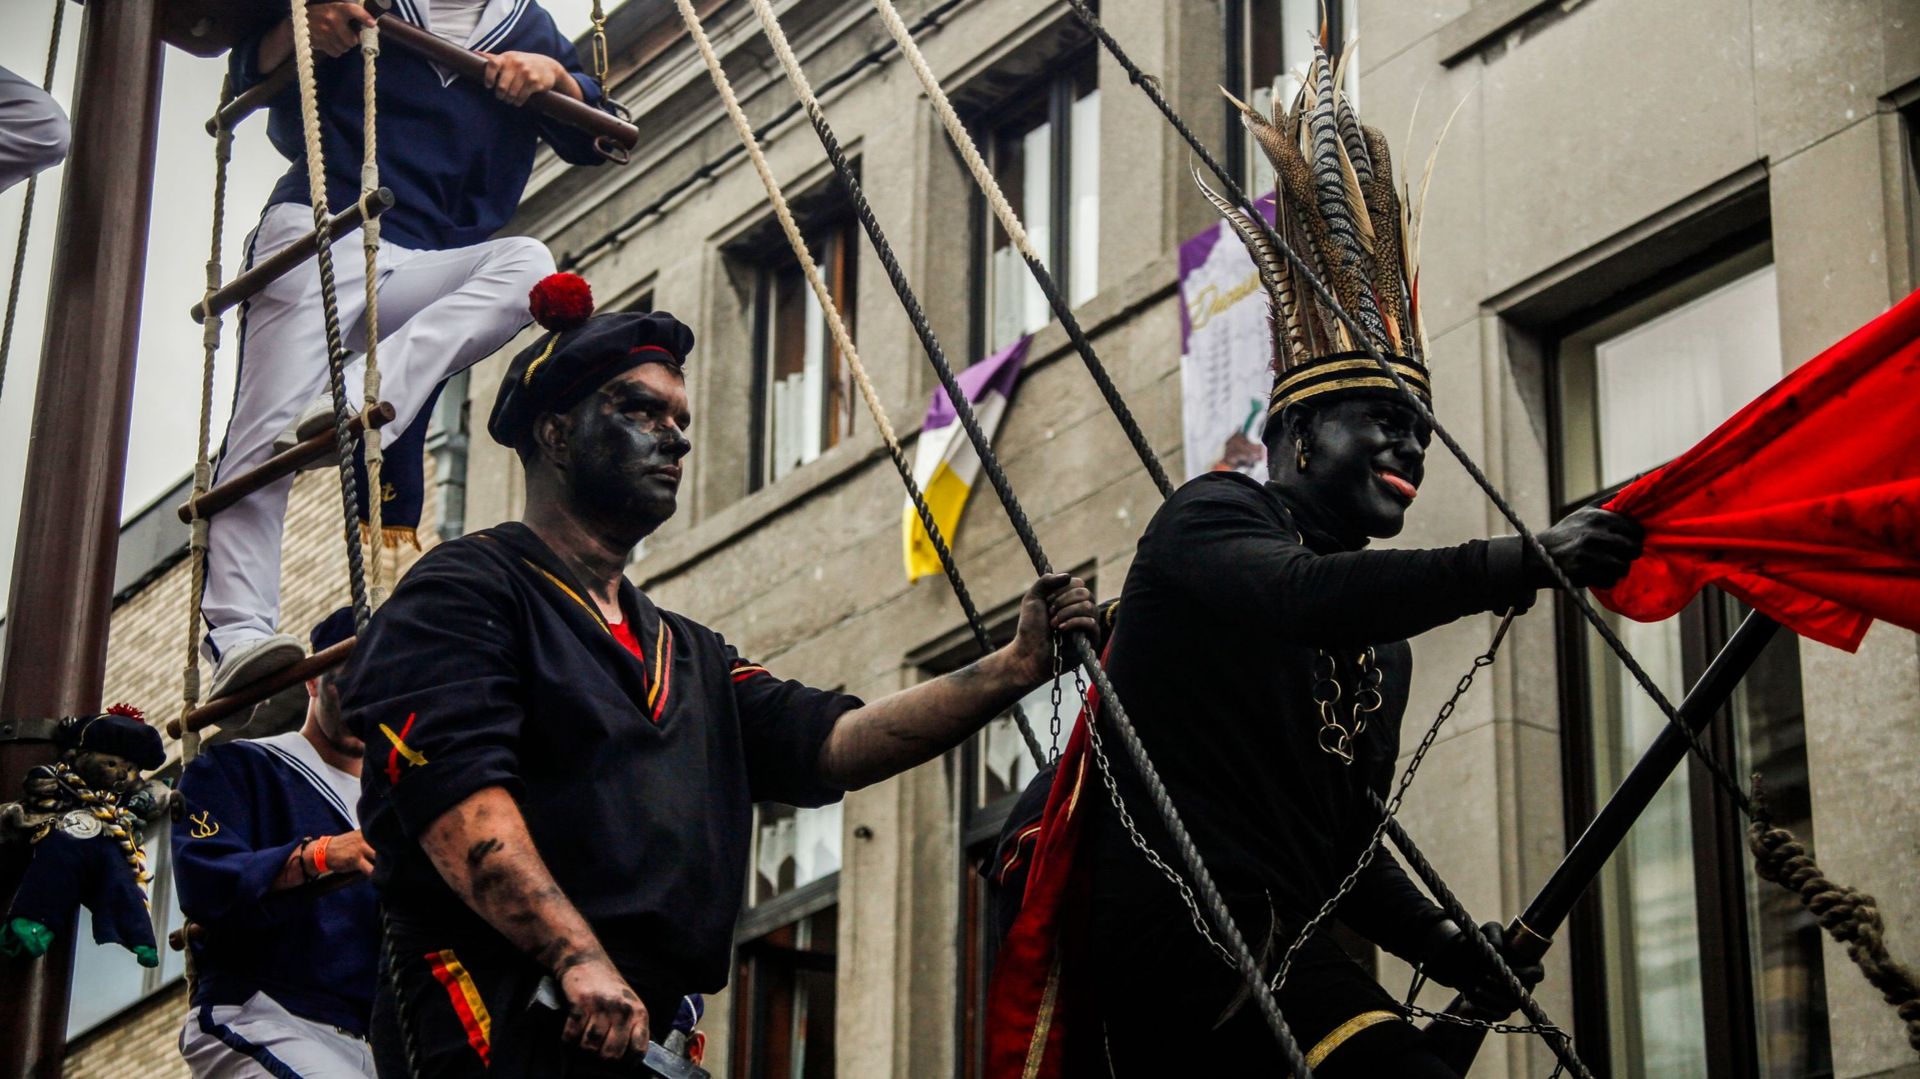 Au Carnaval d'Alost, des déguisements du Ku Klux Klan ne passent